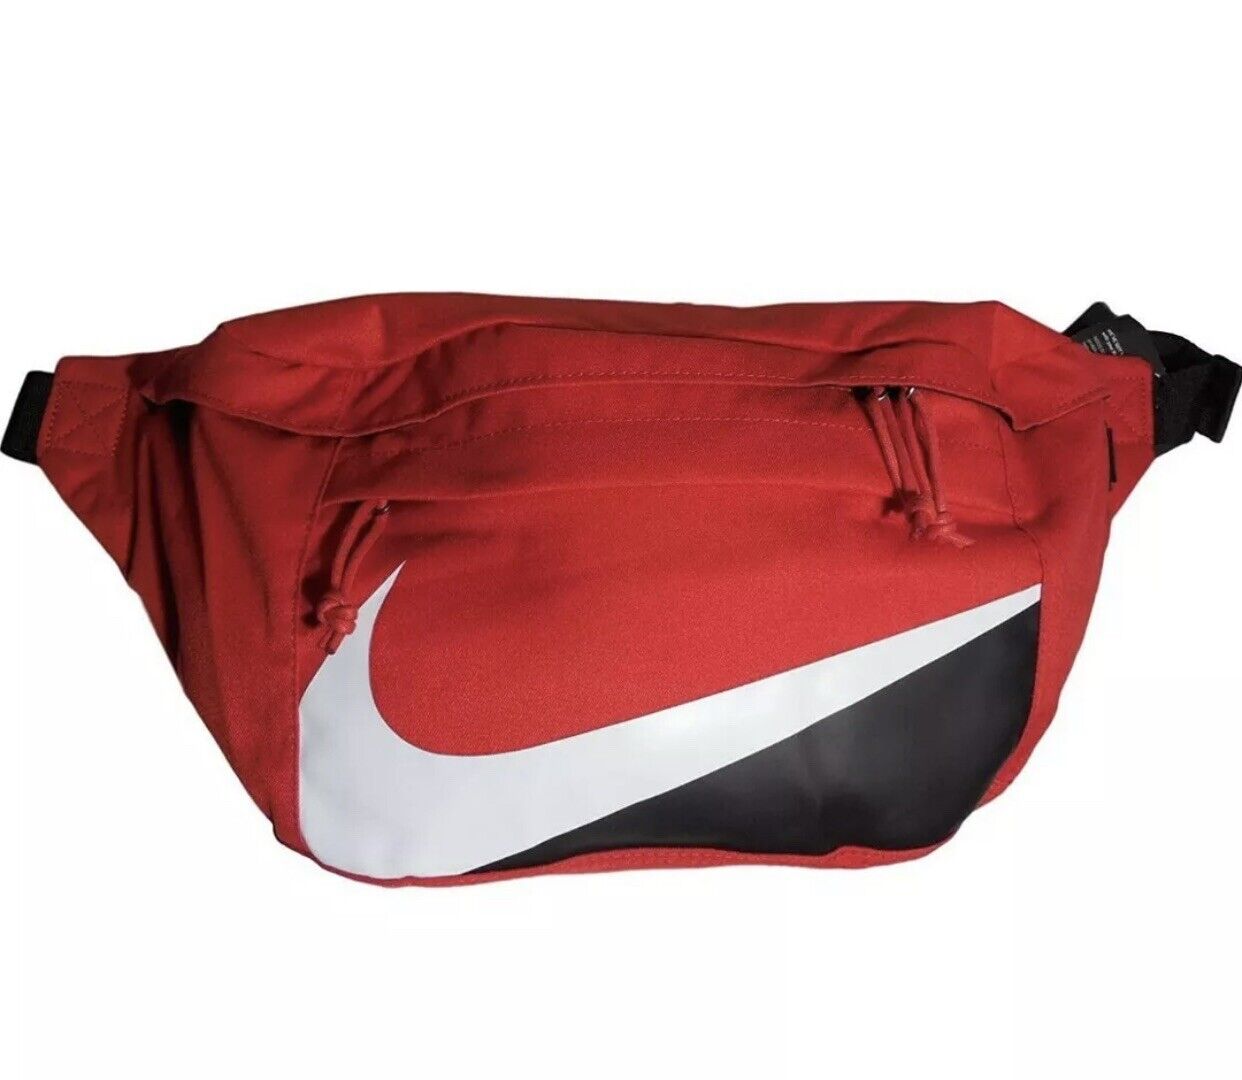 Nuevo con Nike Tech Hip Fanny Pack Bolso Cruzado de Cintura BA6405-657. Negro blanco rojo | eBay